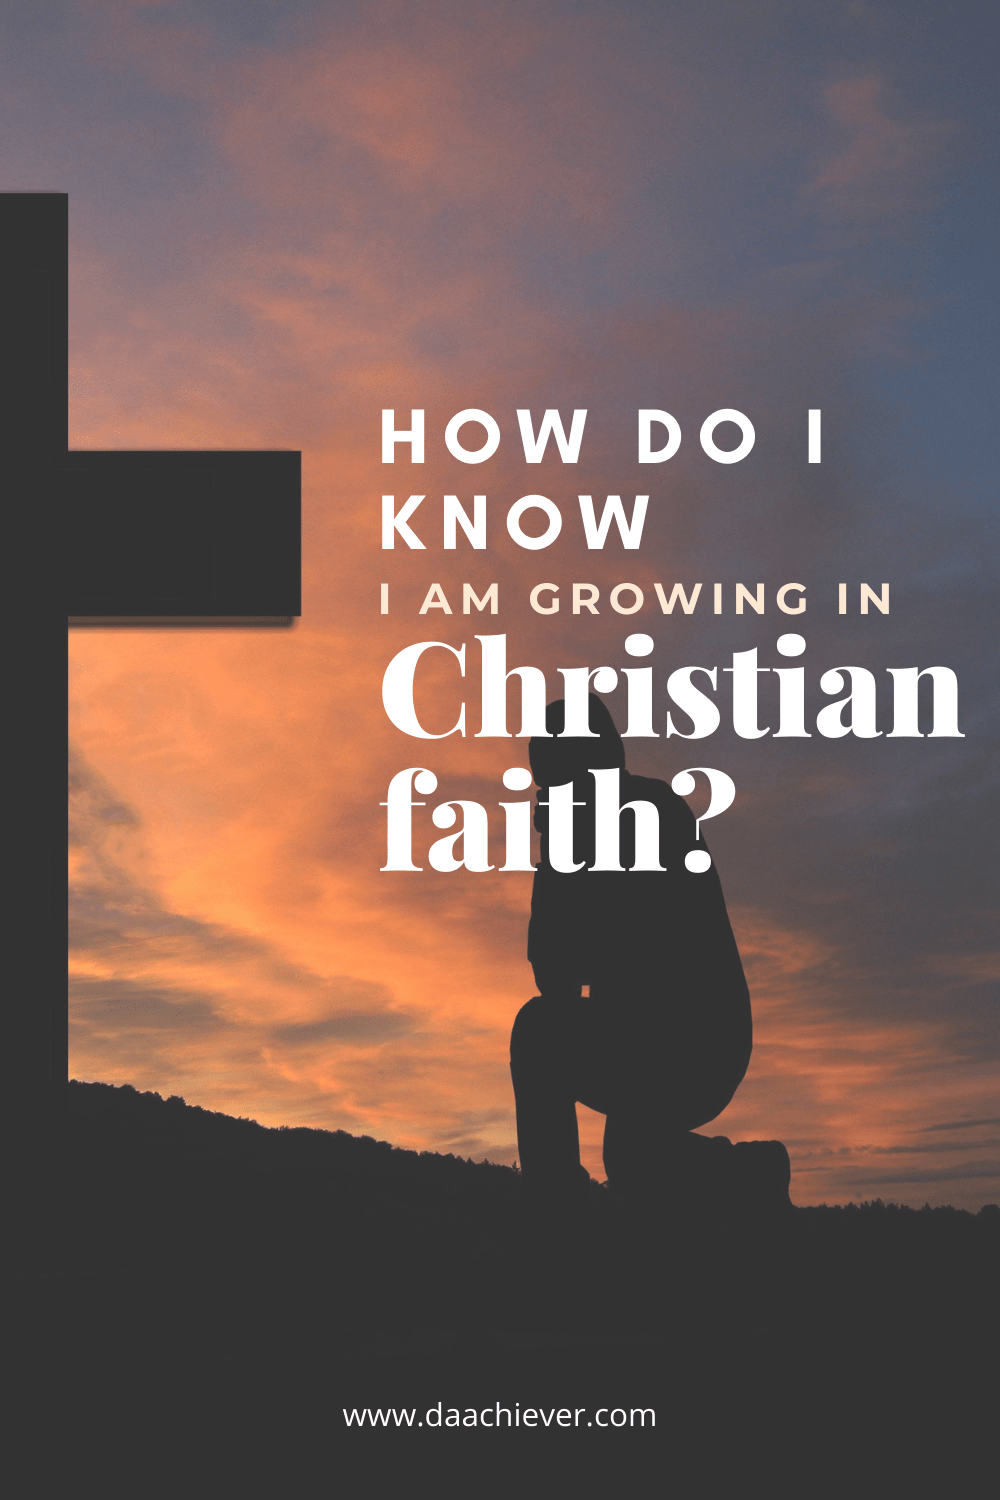 How do I know I am growing in Christian Faith